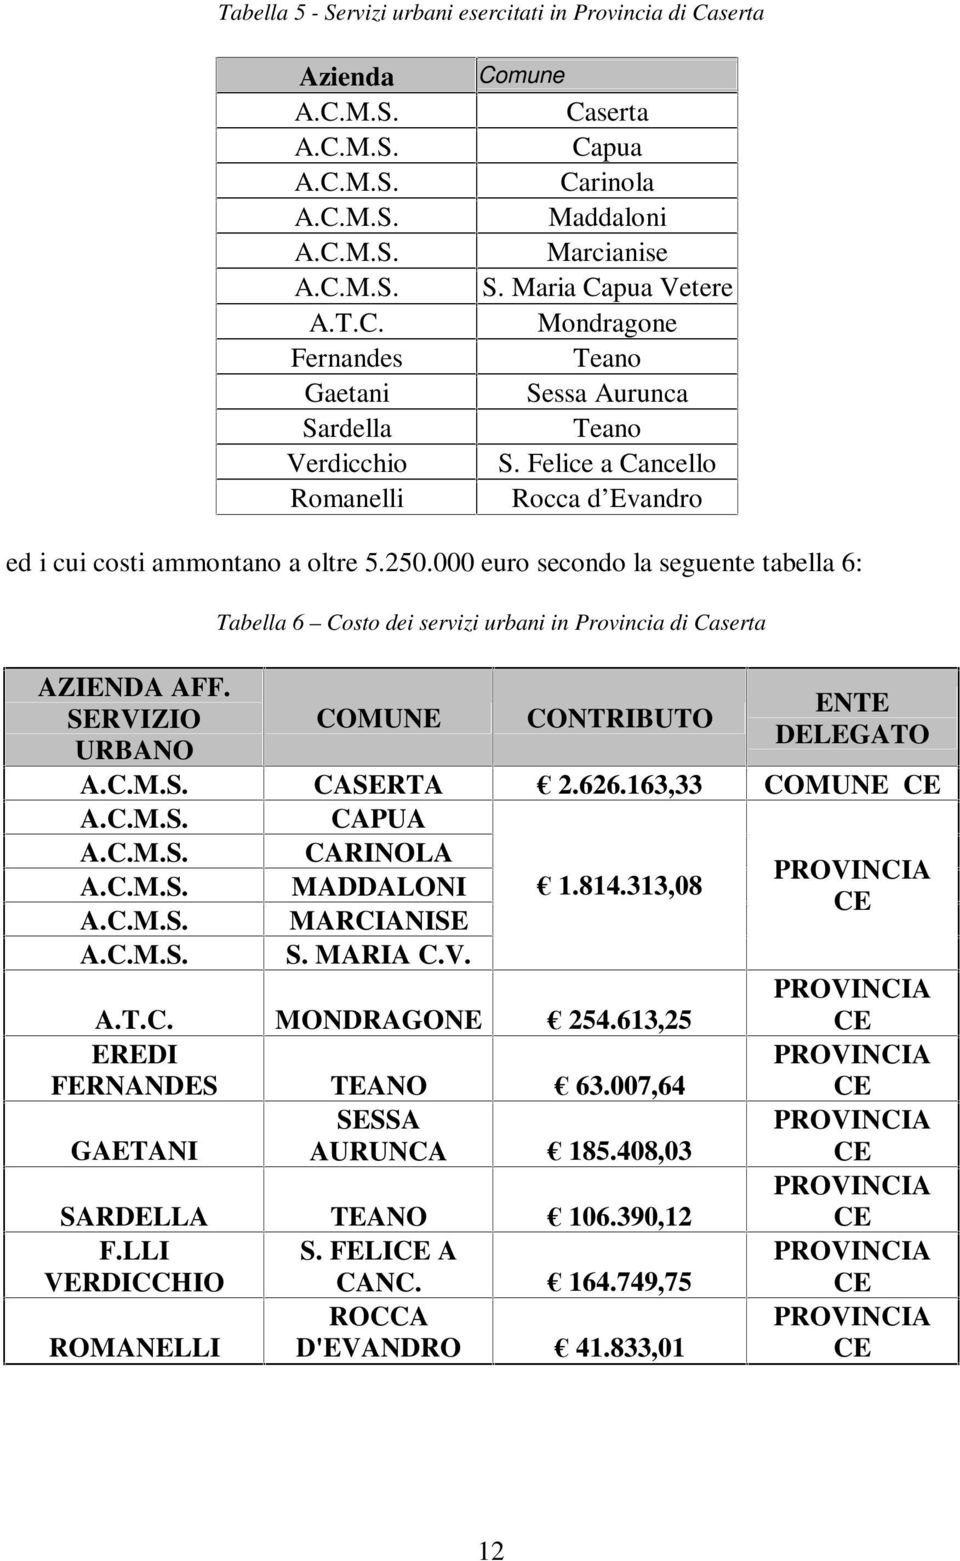 SERVIZIO URBANO Tabella 6 Costo dei servizi urbani in Provincia di Caserta COMUNE CONTRIBUTO ENTE DELEGATO A.C.M.S. CASERTA 2.626.163,33 COMUNE CE A.C.M.S. CAPUA A.C.M.S. CARINOLA PROVINCIA A.C.M.S. MADDALONI 1.